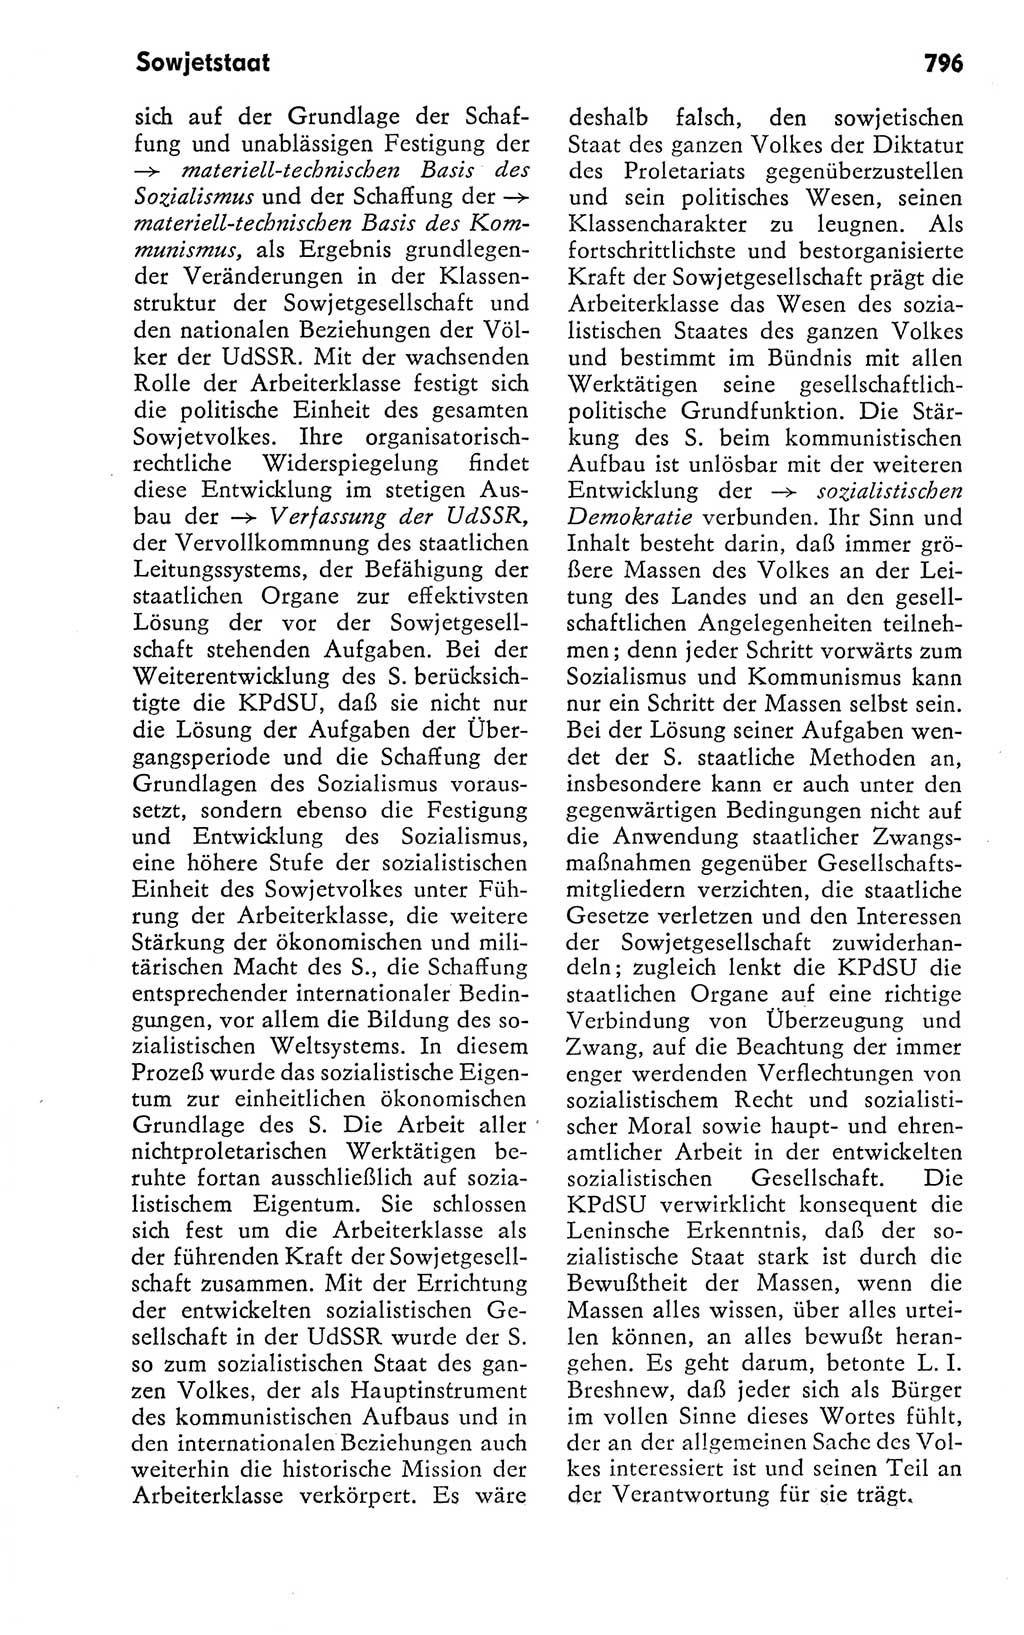 Kleines politisches Wörterbuch [Deutsche Demokratische Republik (DDR)] 1978, Seite 796 (Kl. pol. Wb. DDR 1978, S. 796)